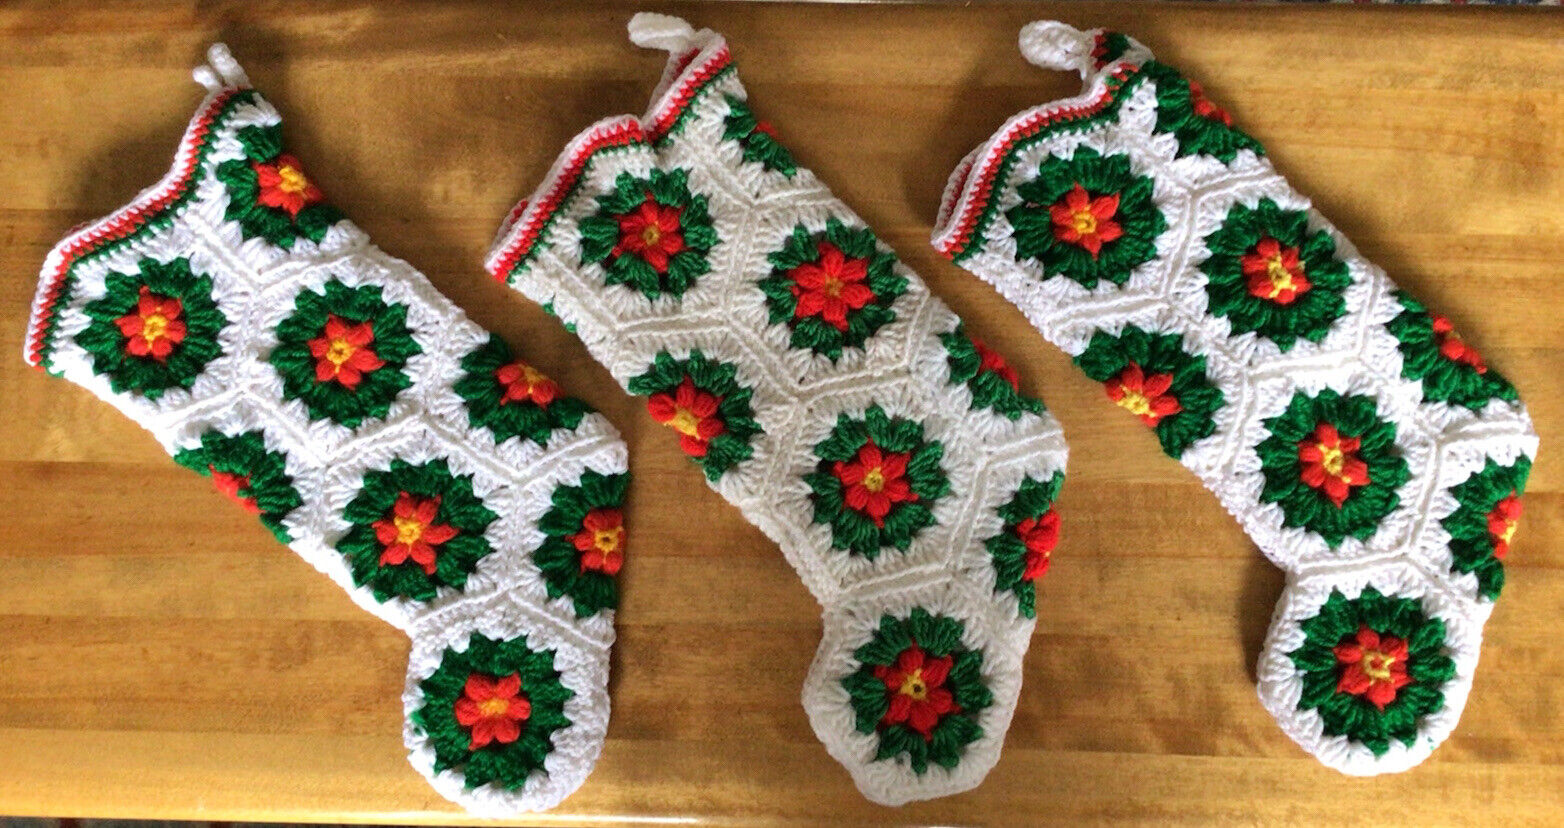 3 Beautiful VTG Handmade Crochet Christmas Stockings, Poinsettia Design, 16”